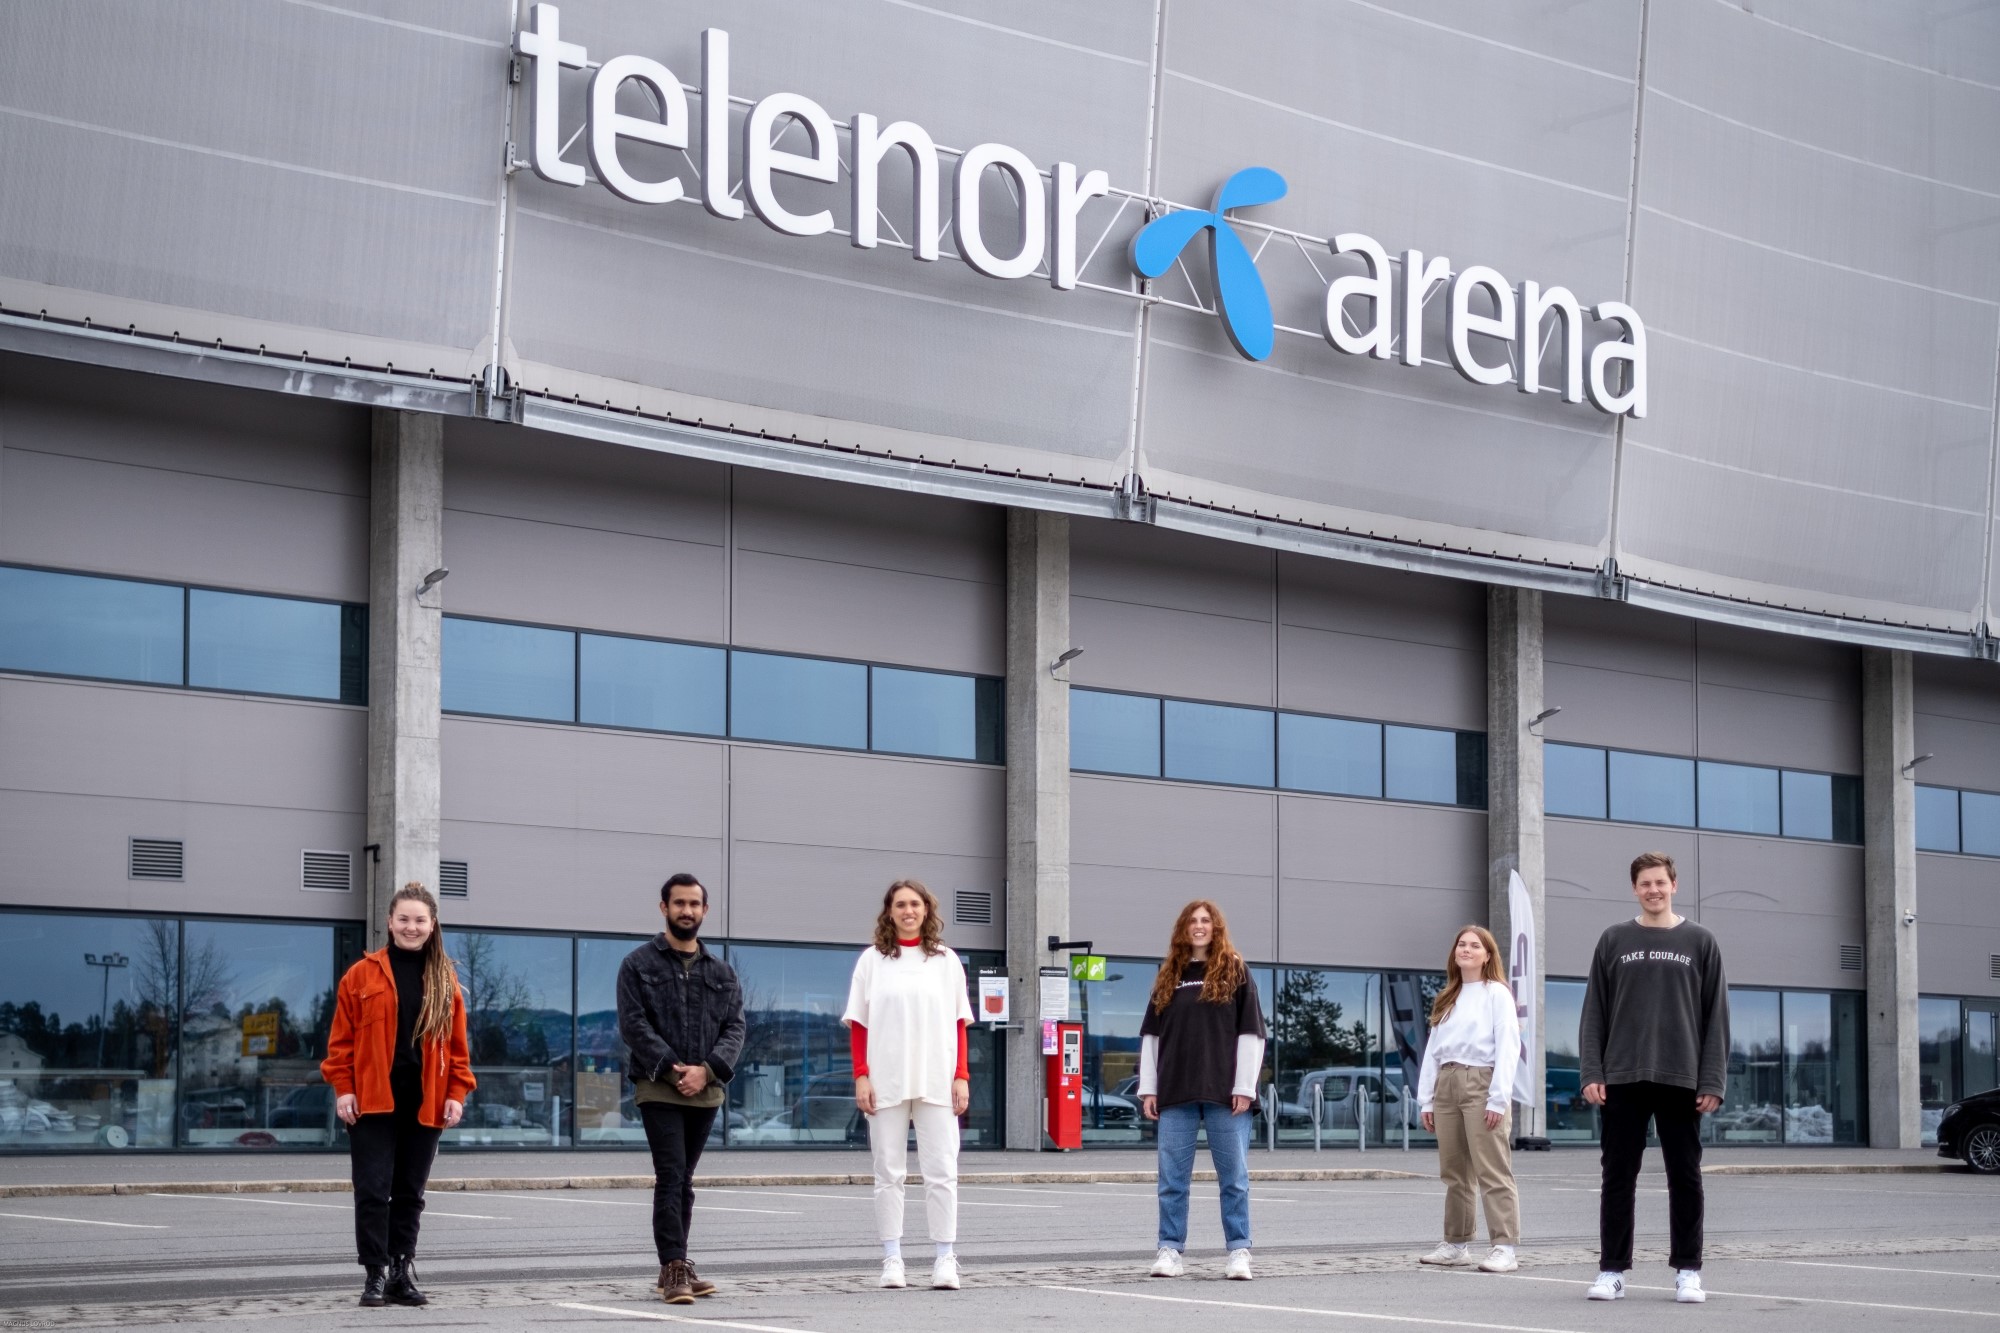 The Send Norway blir arrangert den 25. juni 2022 i Telenor Arena. Over 20 organisasjoner står bak invitasjonen.